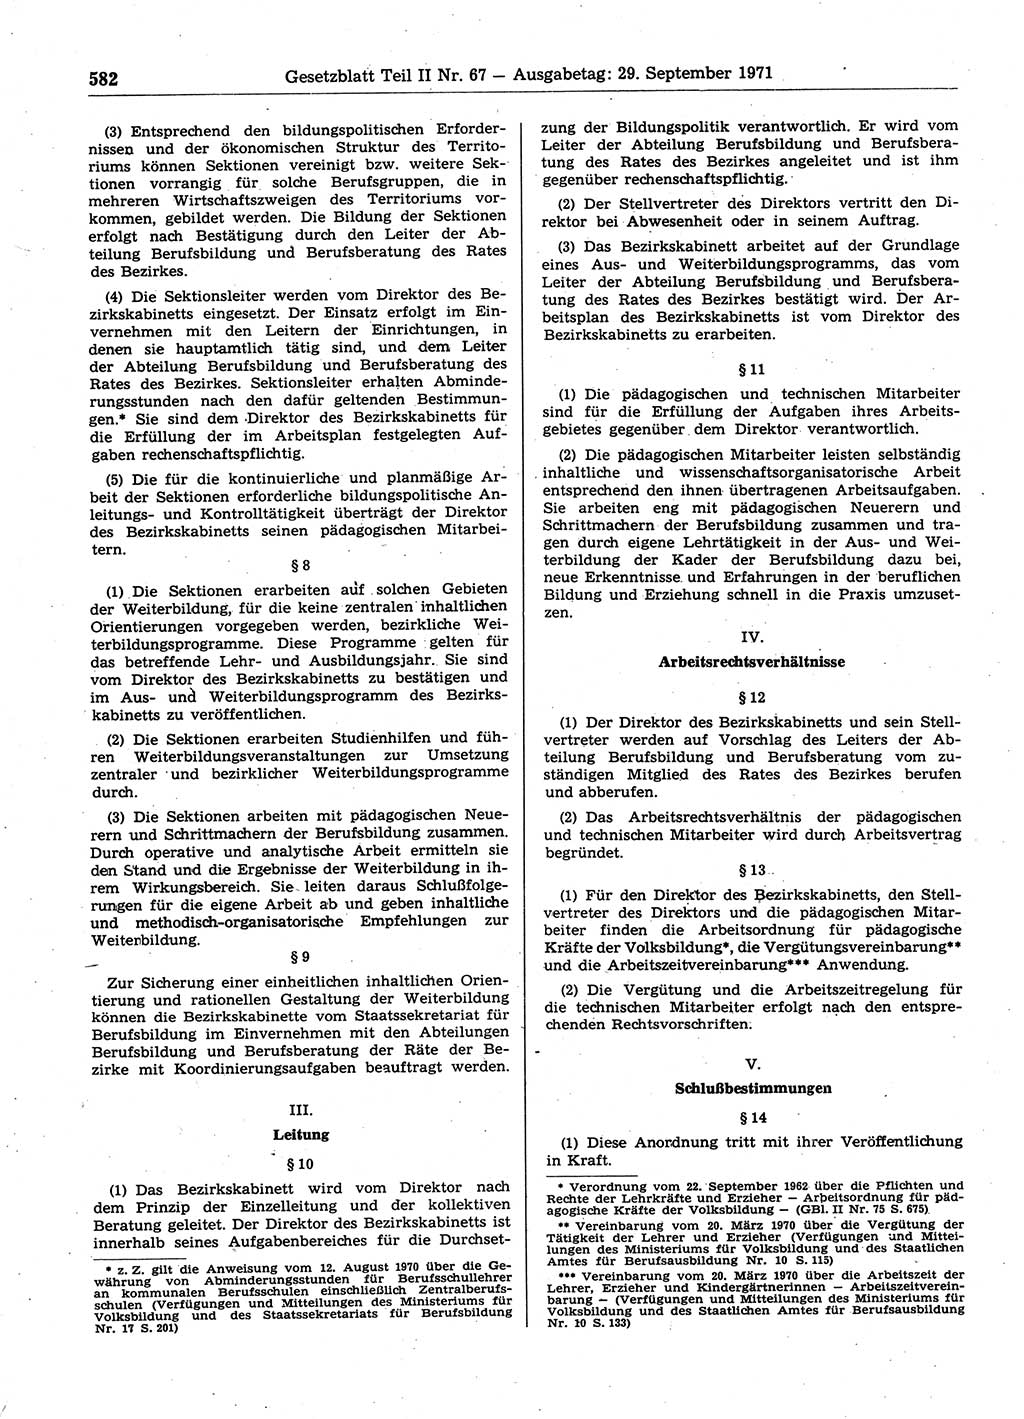 Gesetzblatt (GBl.) der Deutschen Demokratischen Republik (DDR) Teil ⅠⅠ 1971, Seite 582 (GBl. DDR ⅠⅠ 1971, S. 582)